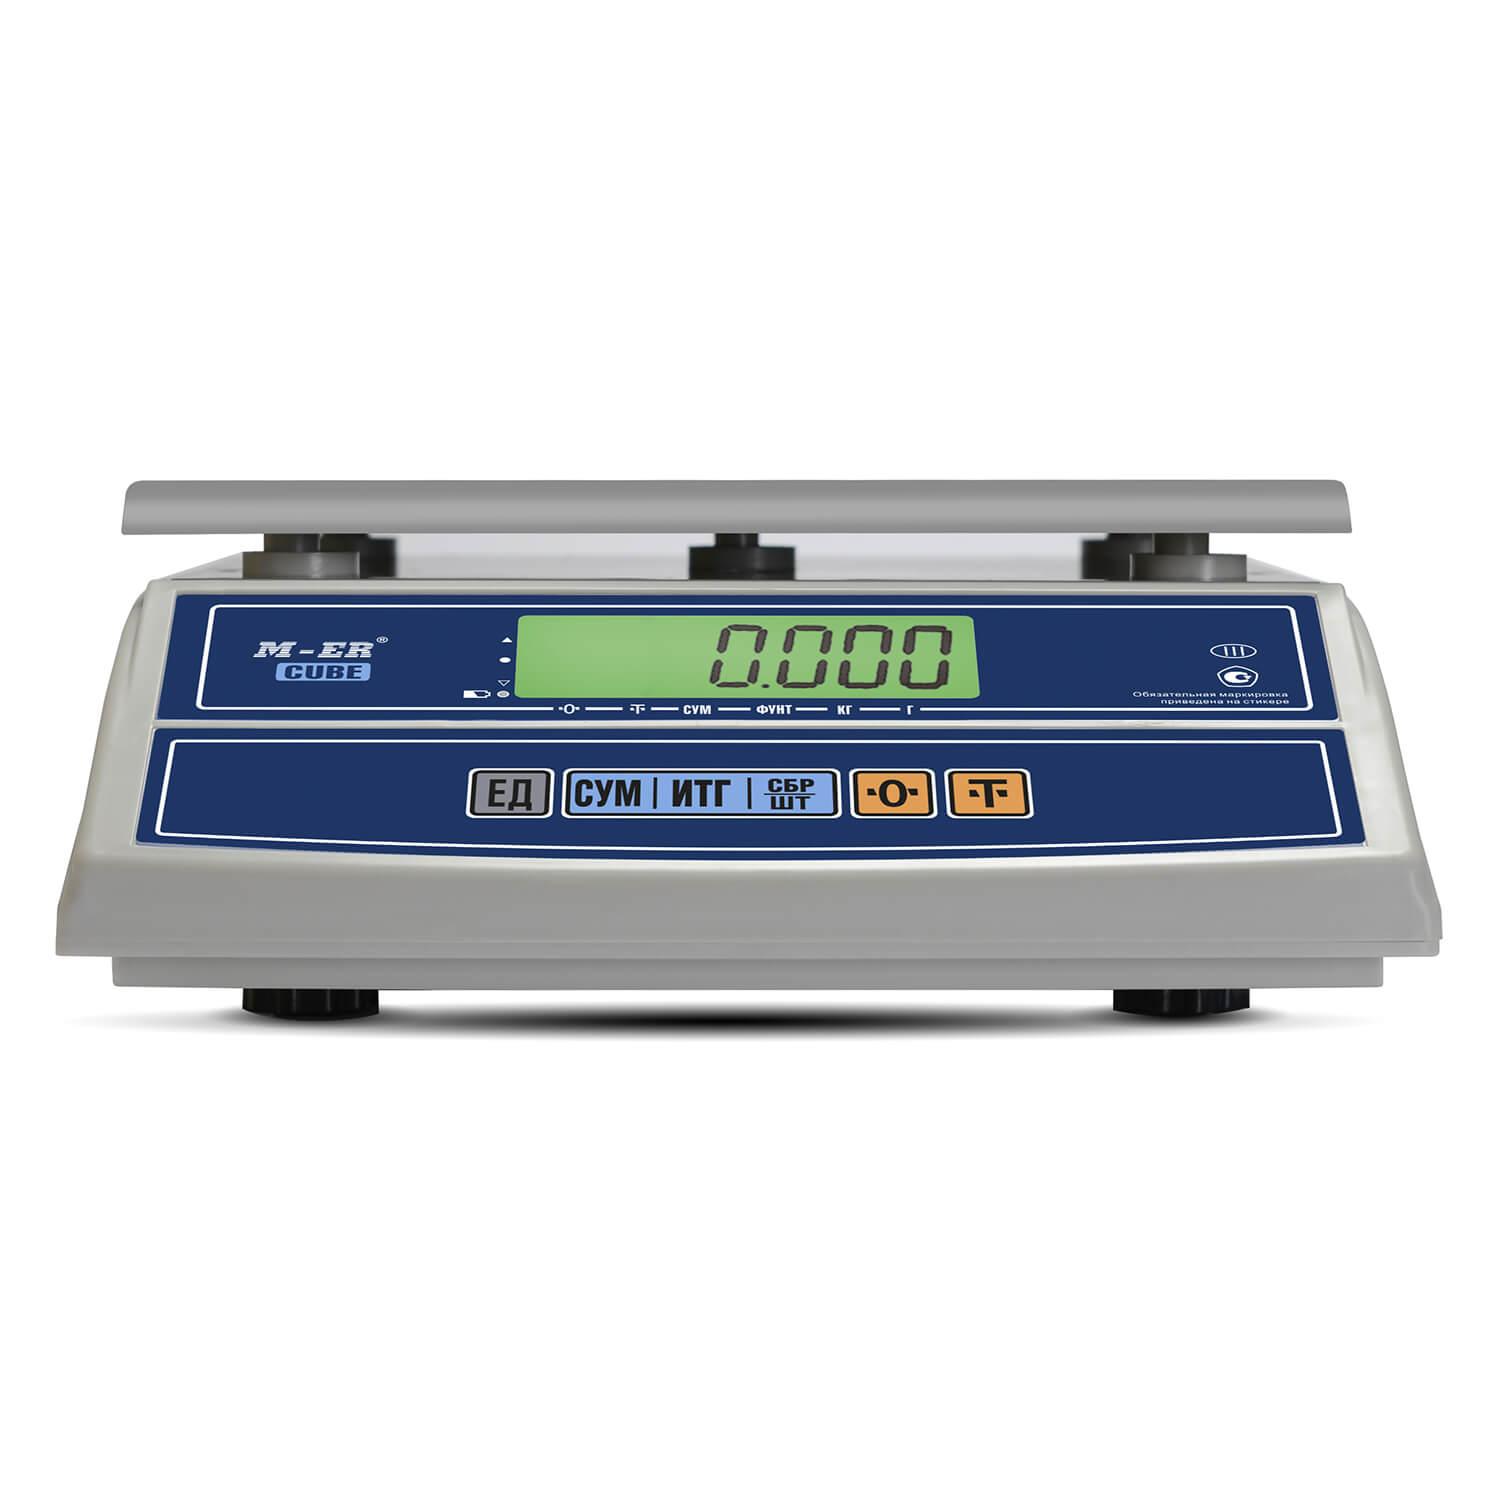 Фасовочные настольные весы M-ER 326 AF-32.5 "Cube" LCD USB (3151)